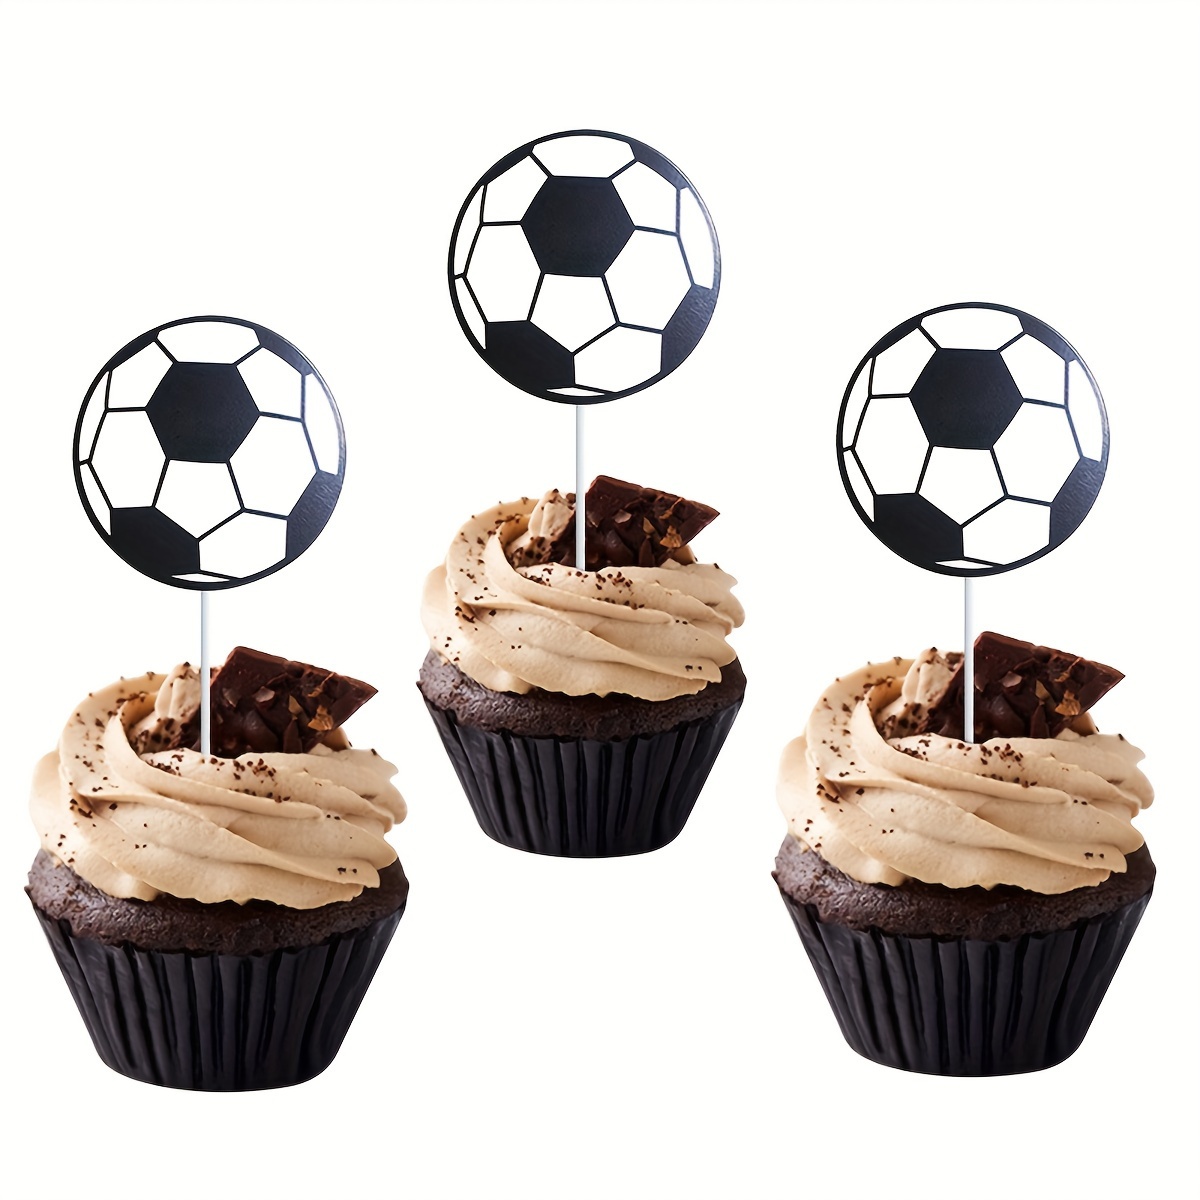 12 adornos para tartas de fútbol, decoración de tartas de fiesta temática  de fútbol, mini jugadores de fútbol, pelotas y portería para niños